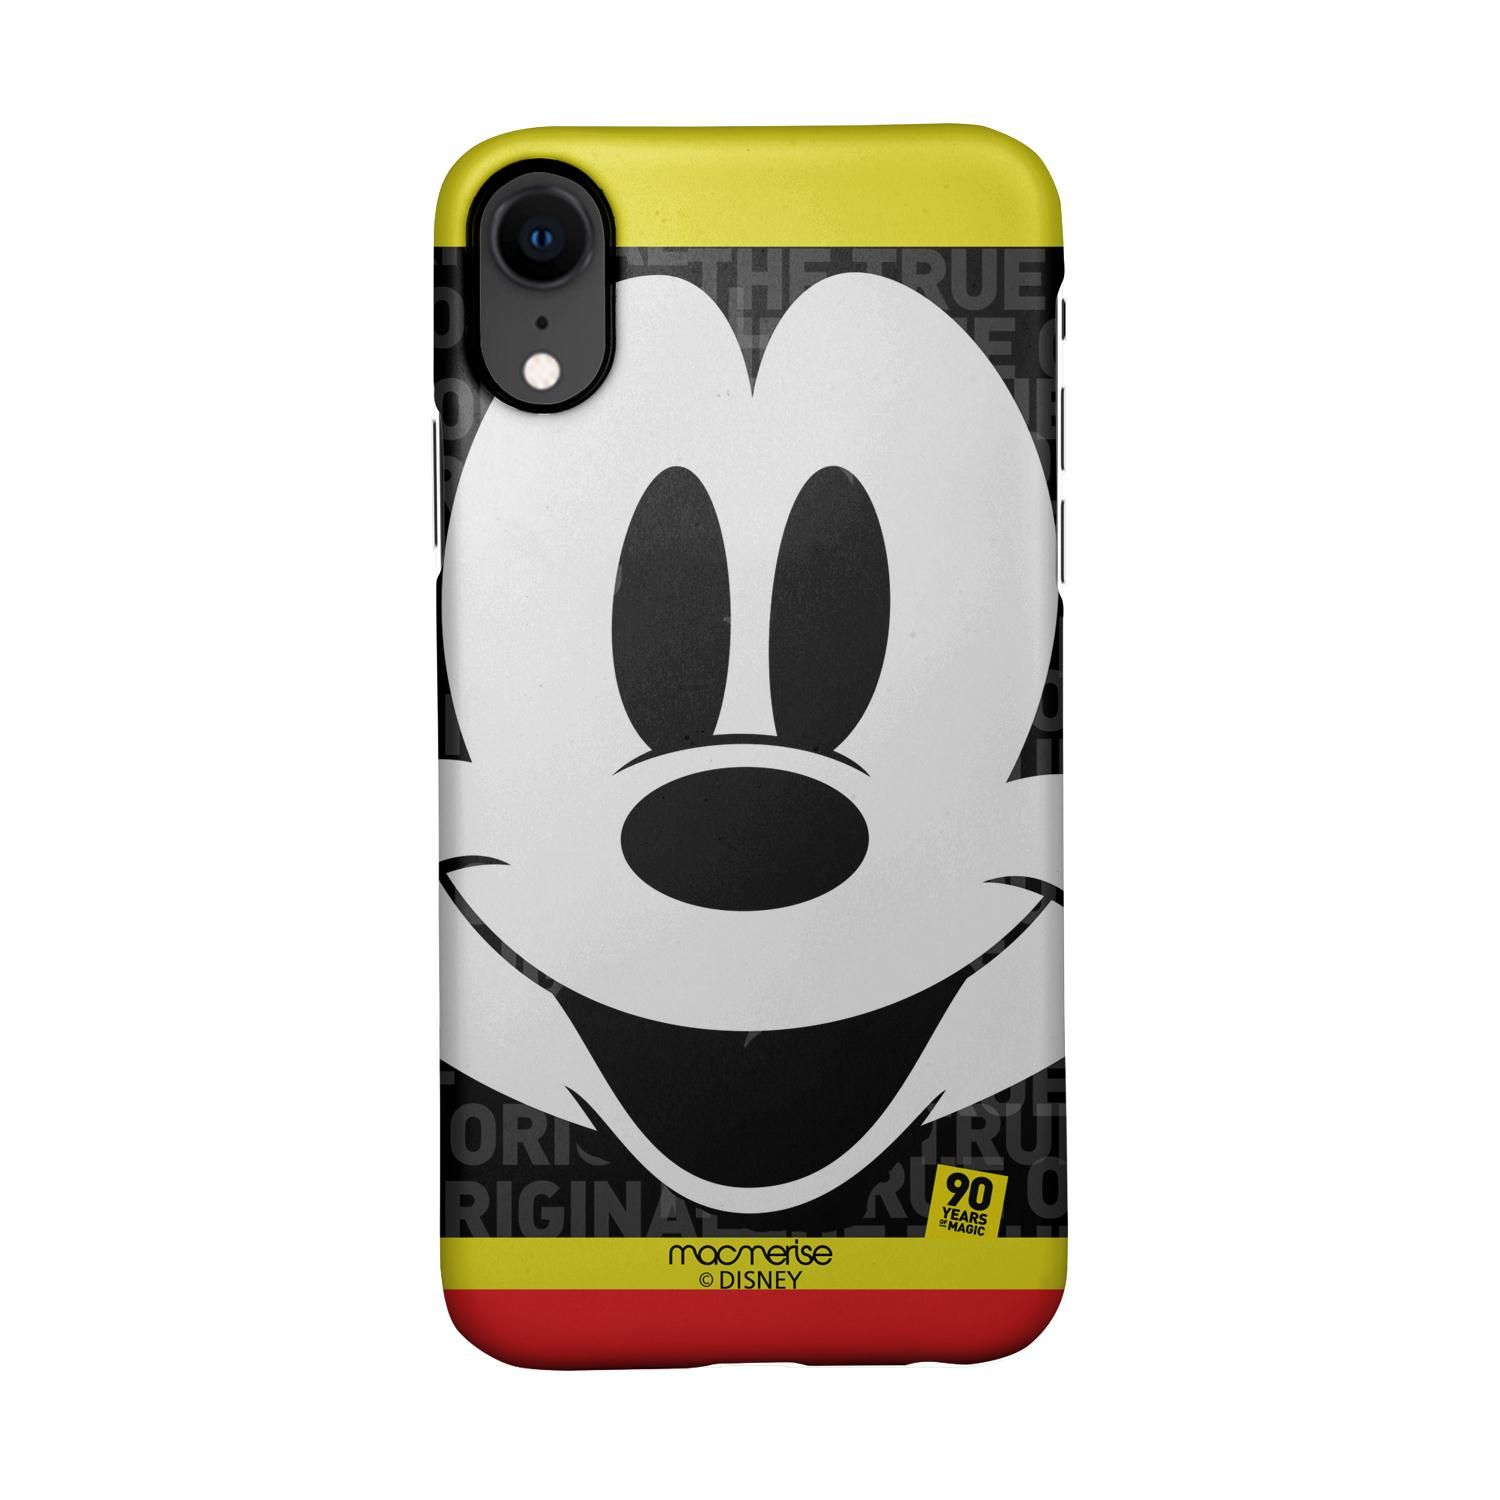 Buy Mickey Original - Sleek Phone Case for iPhone XR Online